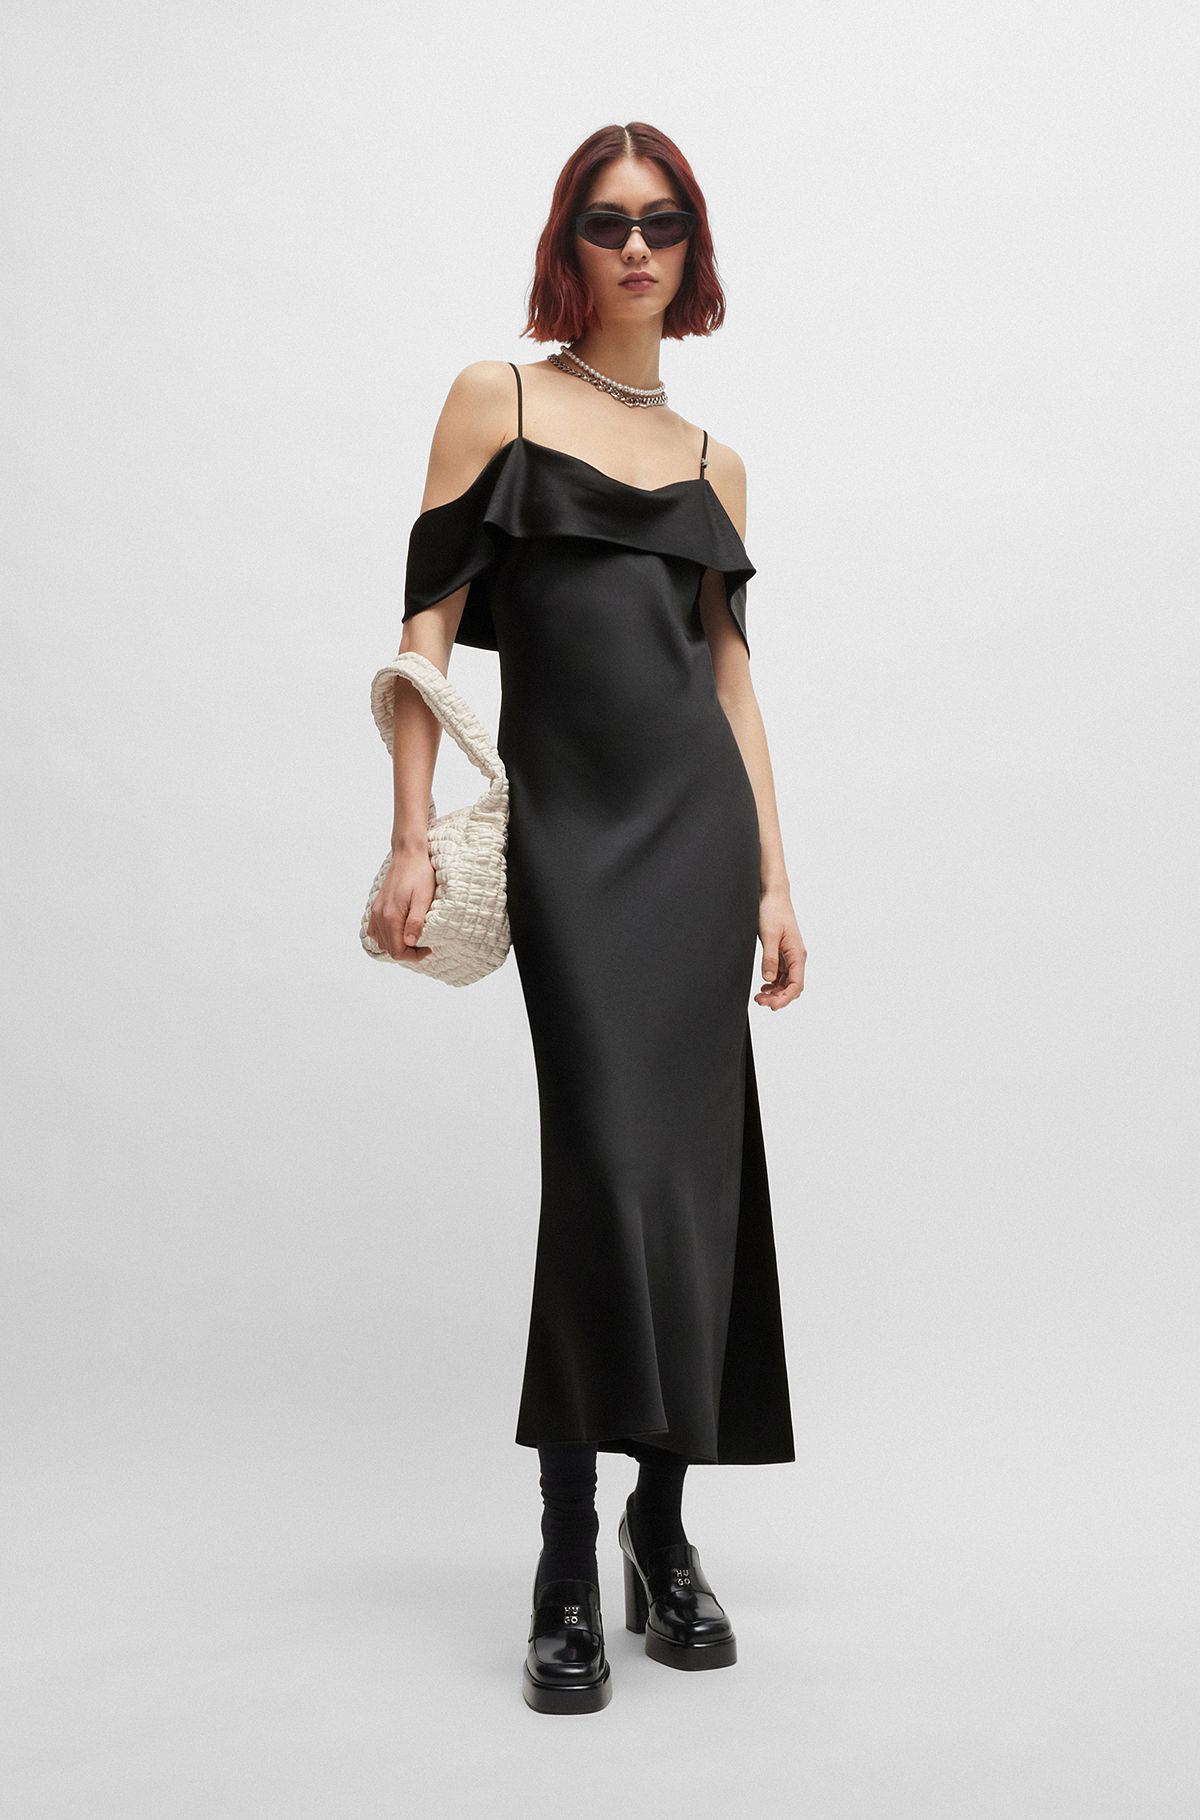 Bardot-neckline dress in satin, Black